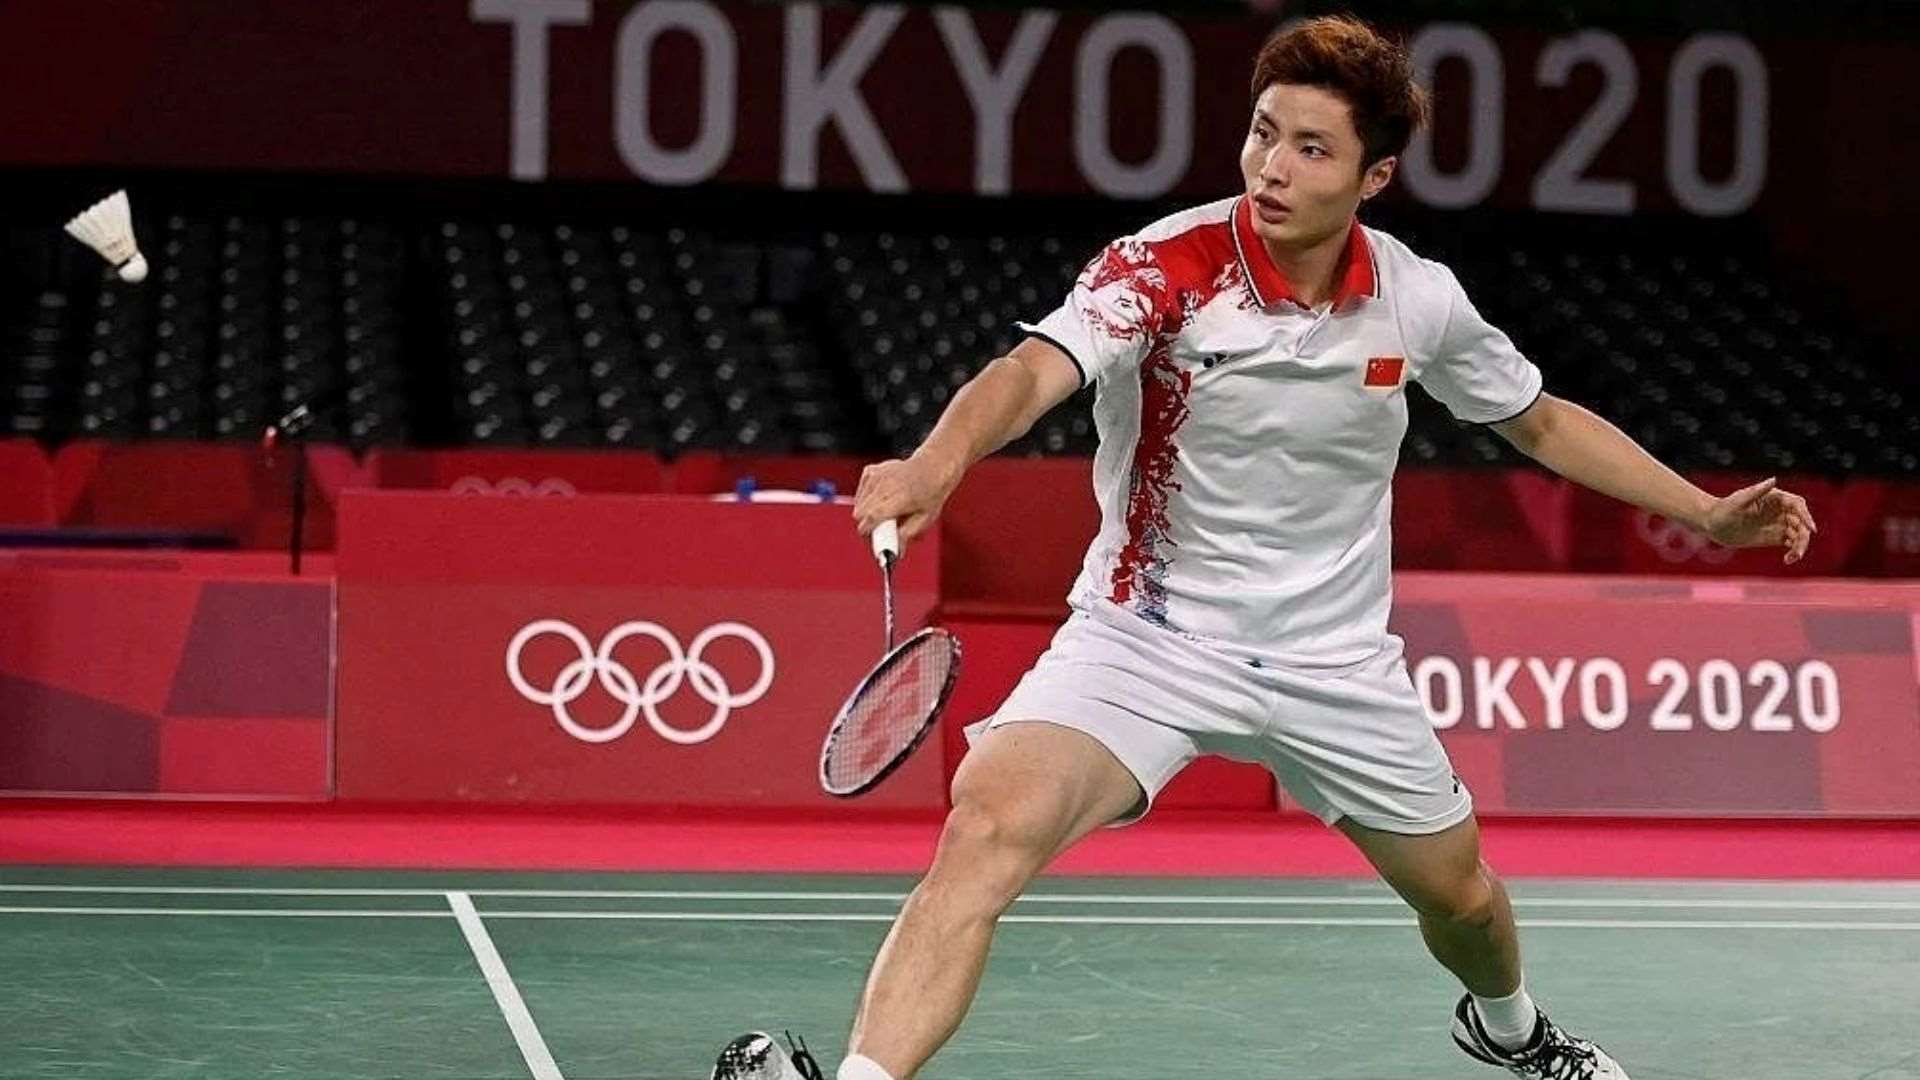 Shi Yuqi at Tokyo Olympics 2020 (Image Credits - Instagram/ @shiyuqi__)